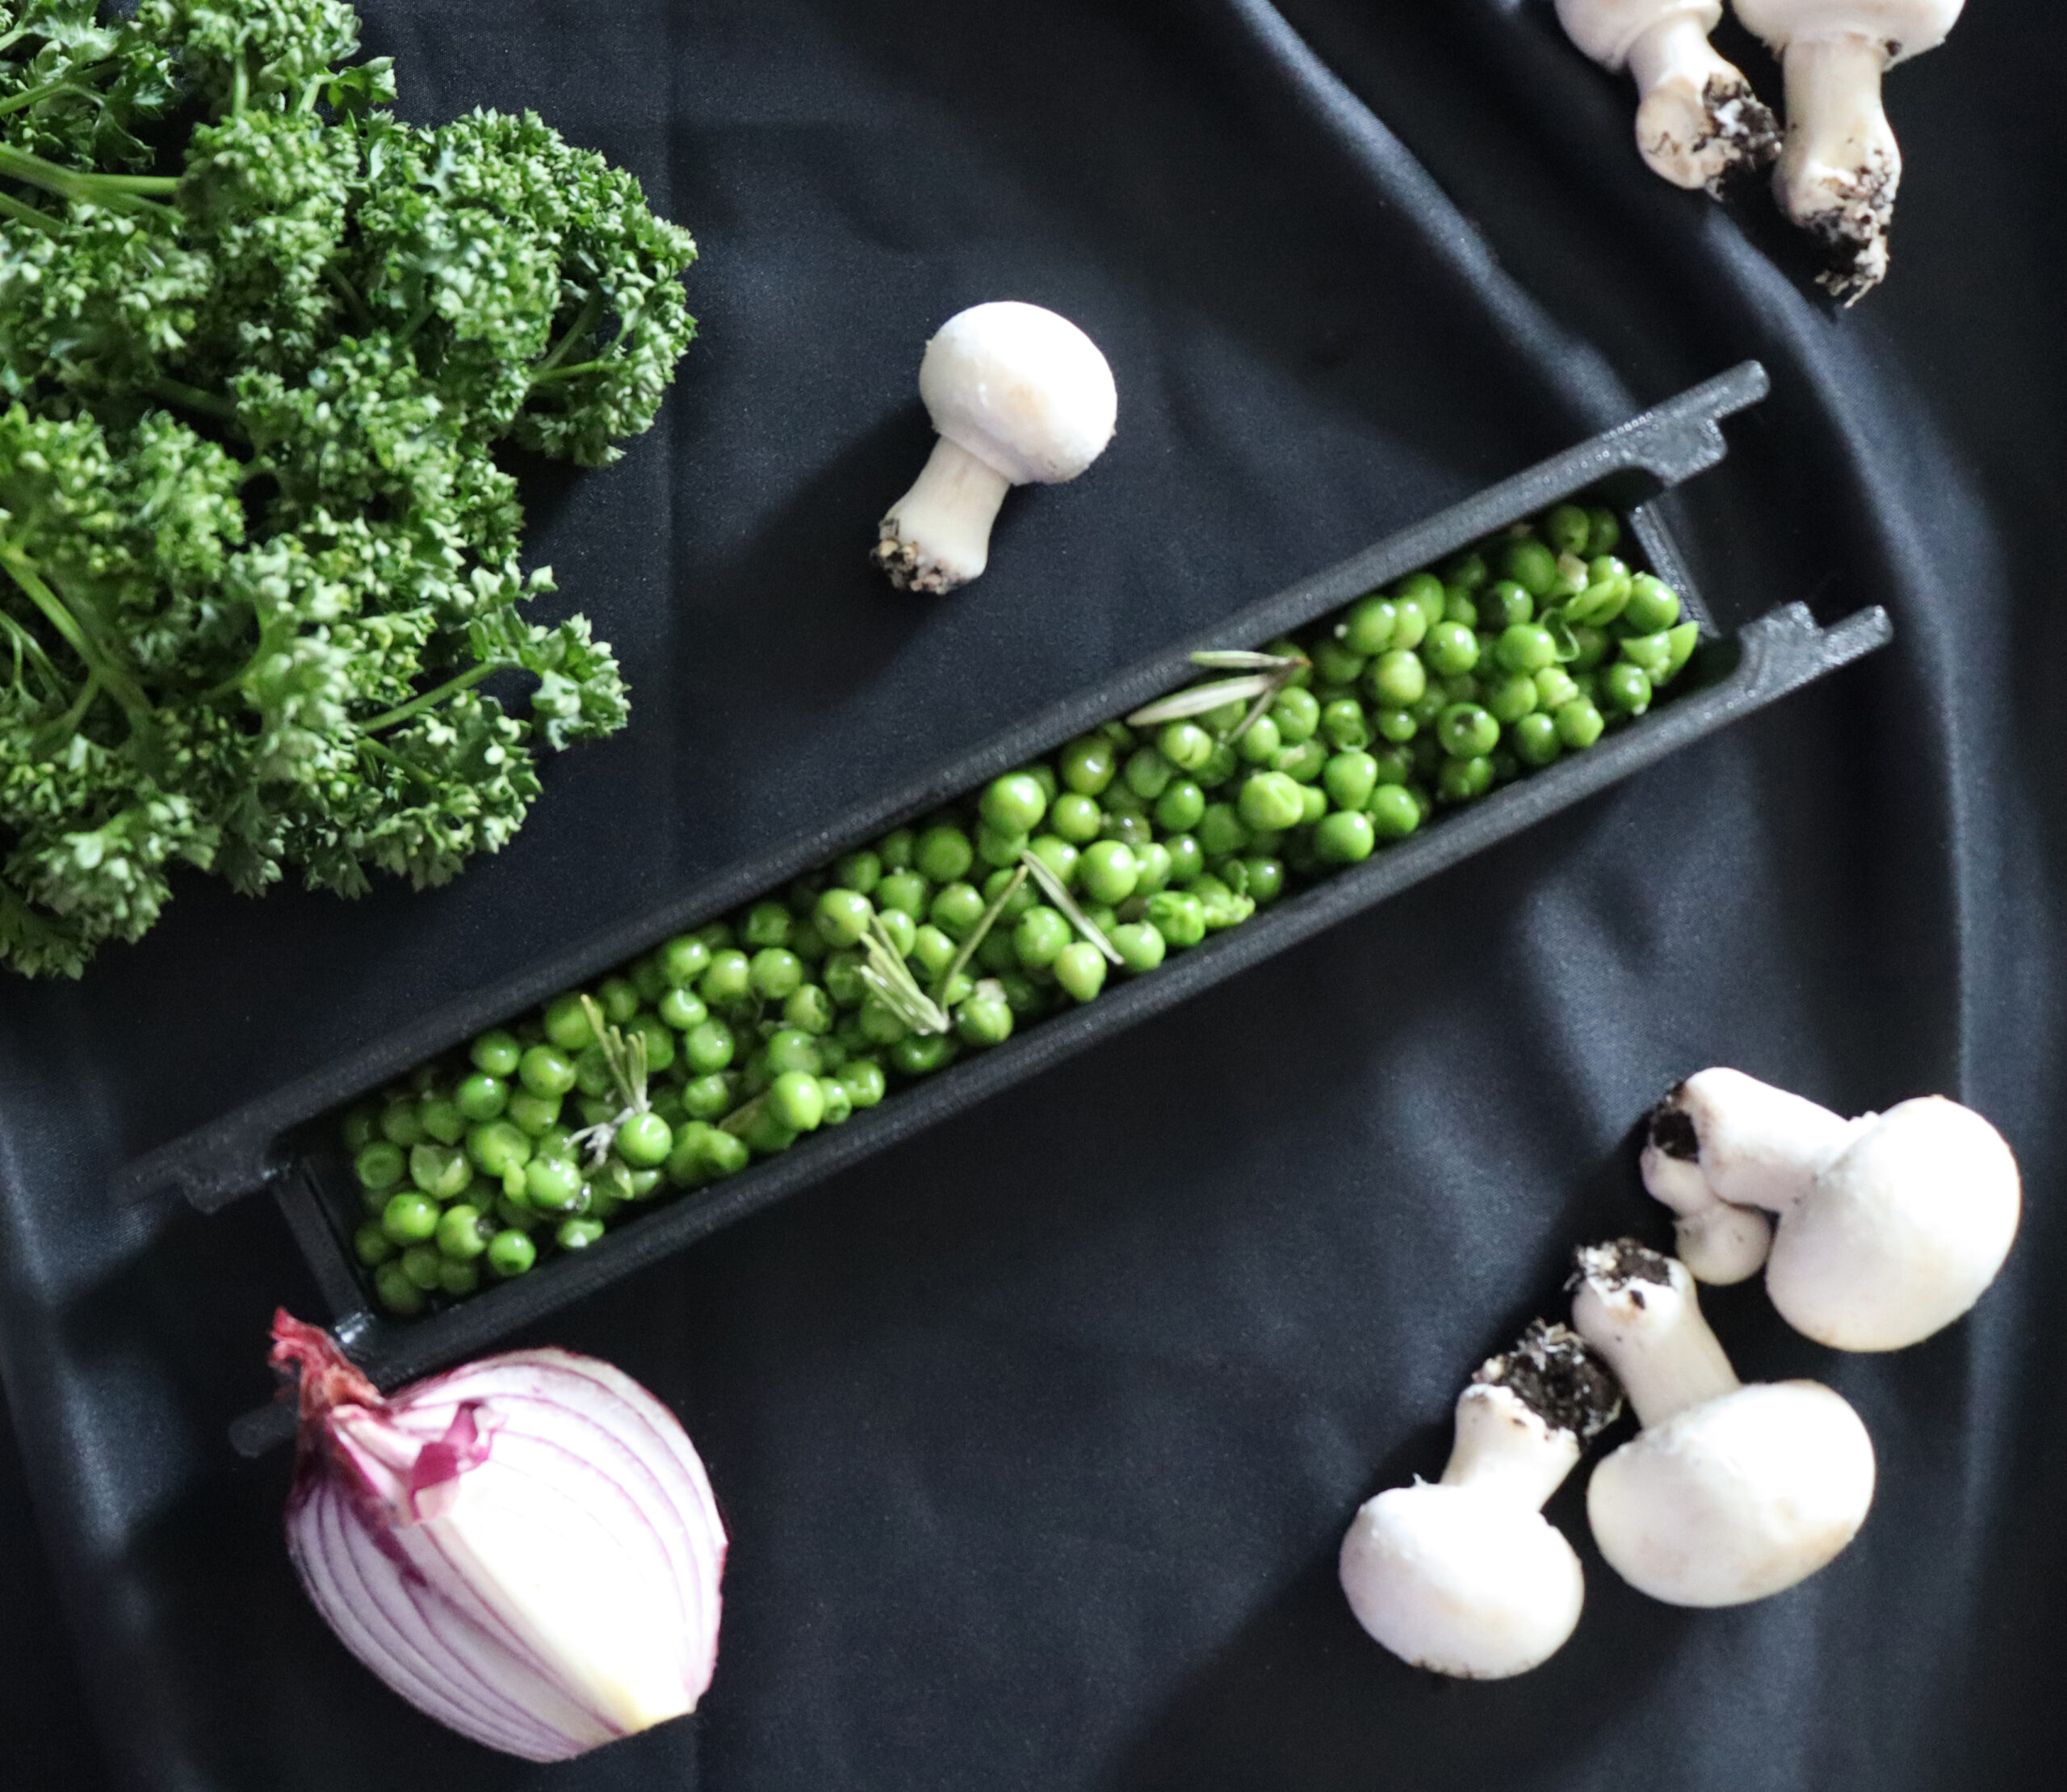 Photo culinaire : petit pois dans un petit compartiment avec des aliments autour pour décorer (persil, champignons, oignon)